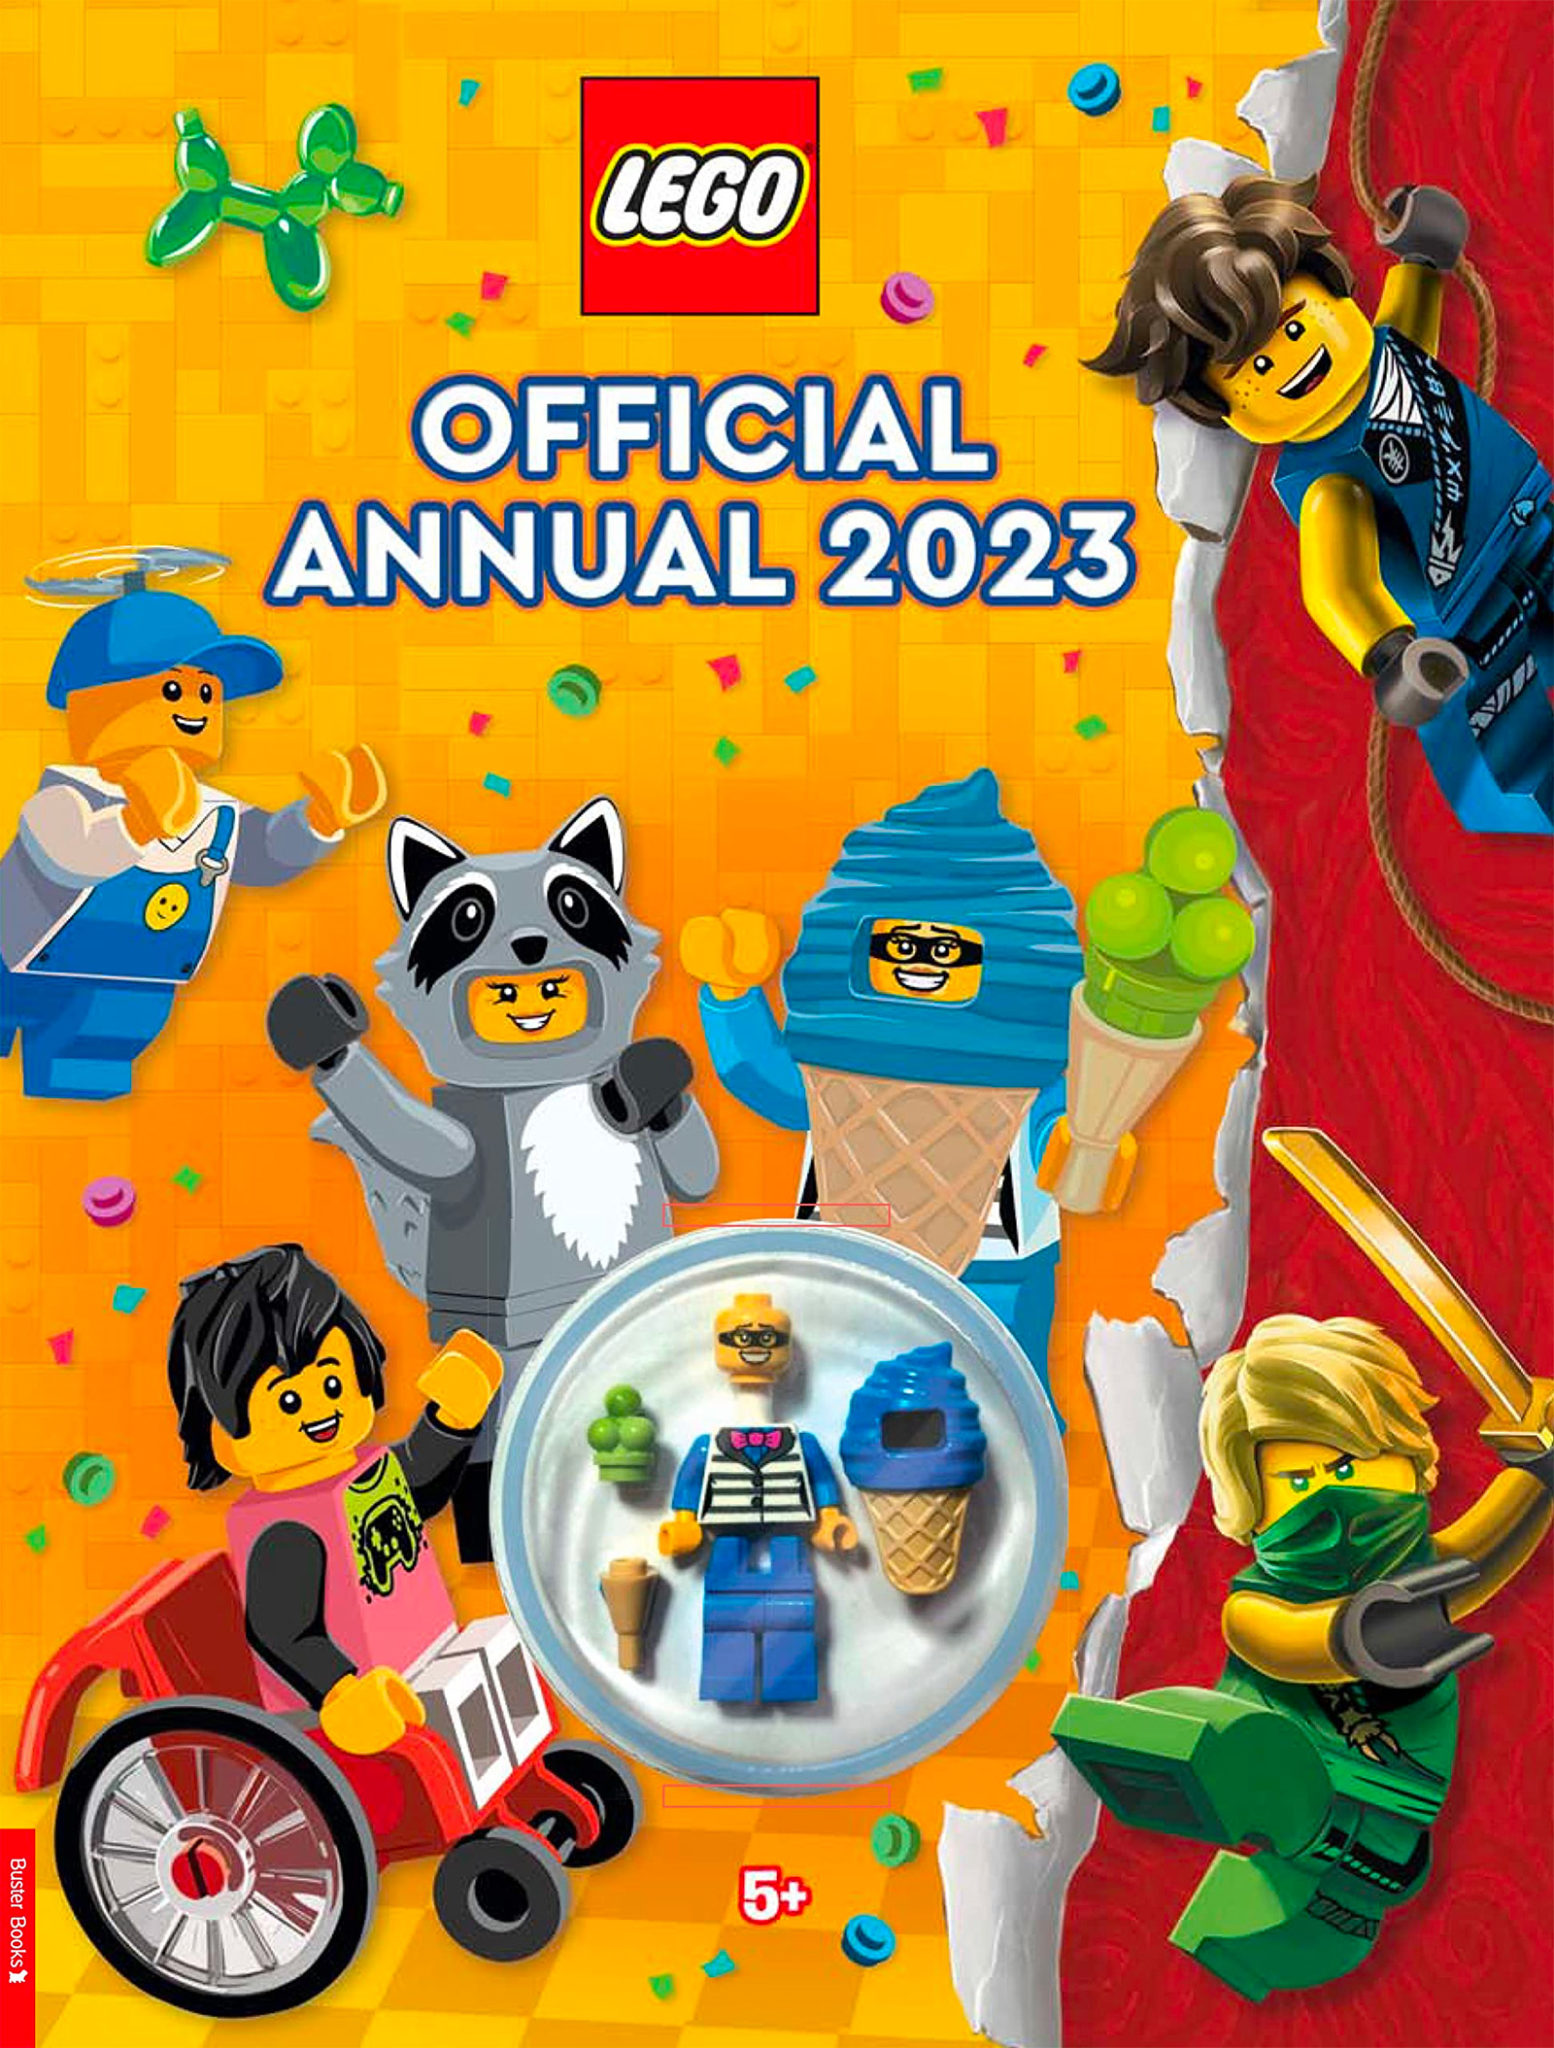 LEGO Official Annual 2023: enn ein persóna í búningi fyrir safnið þitt